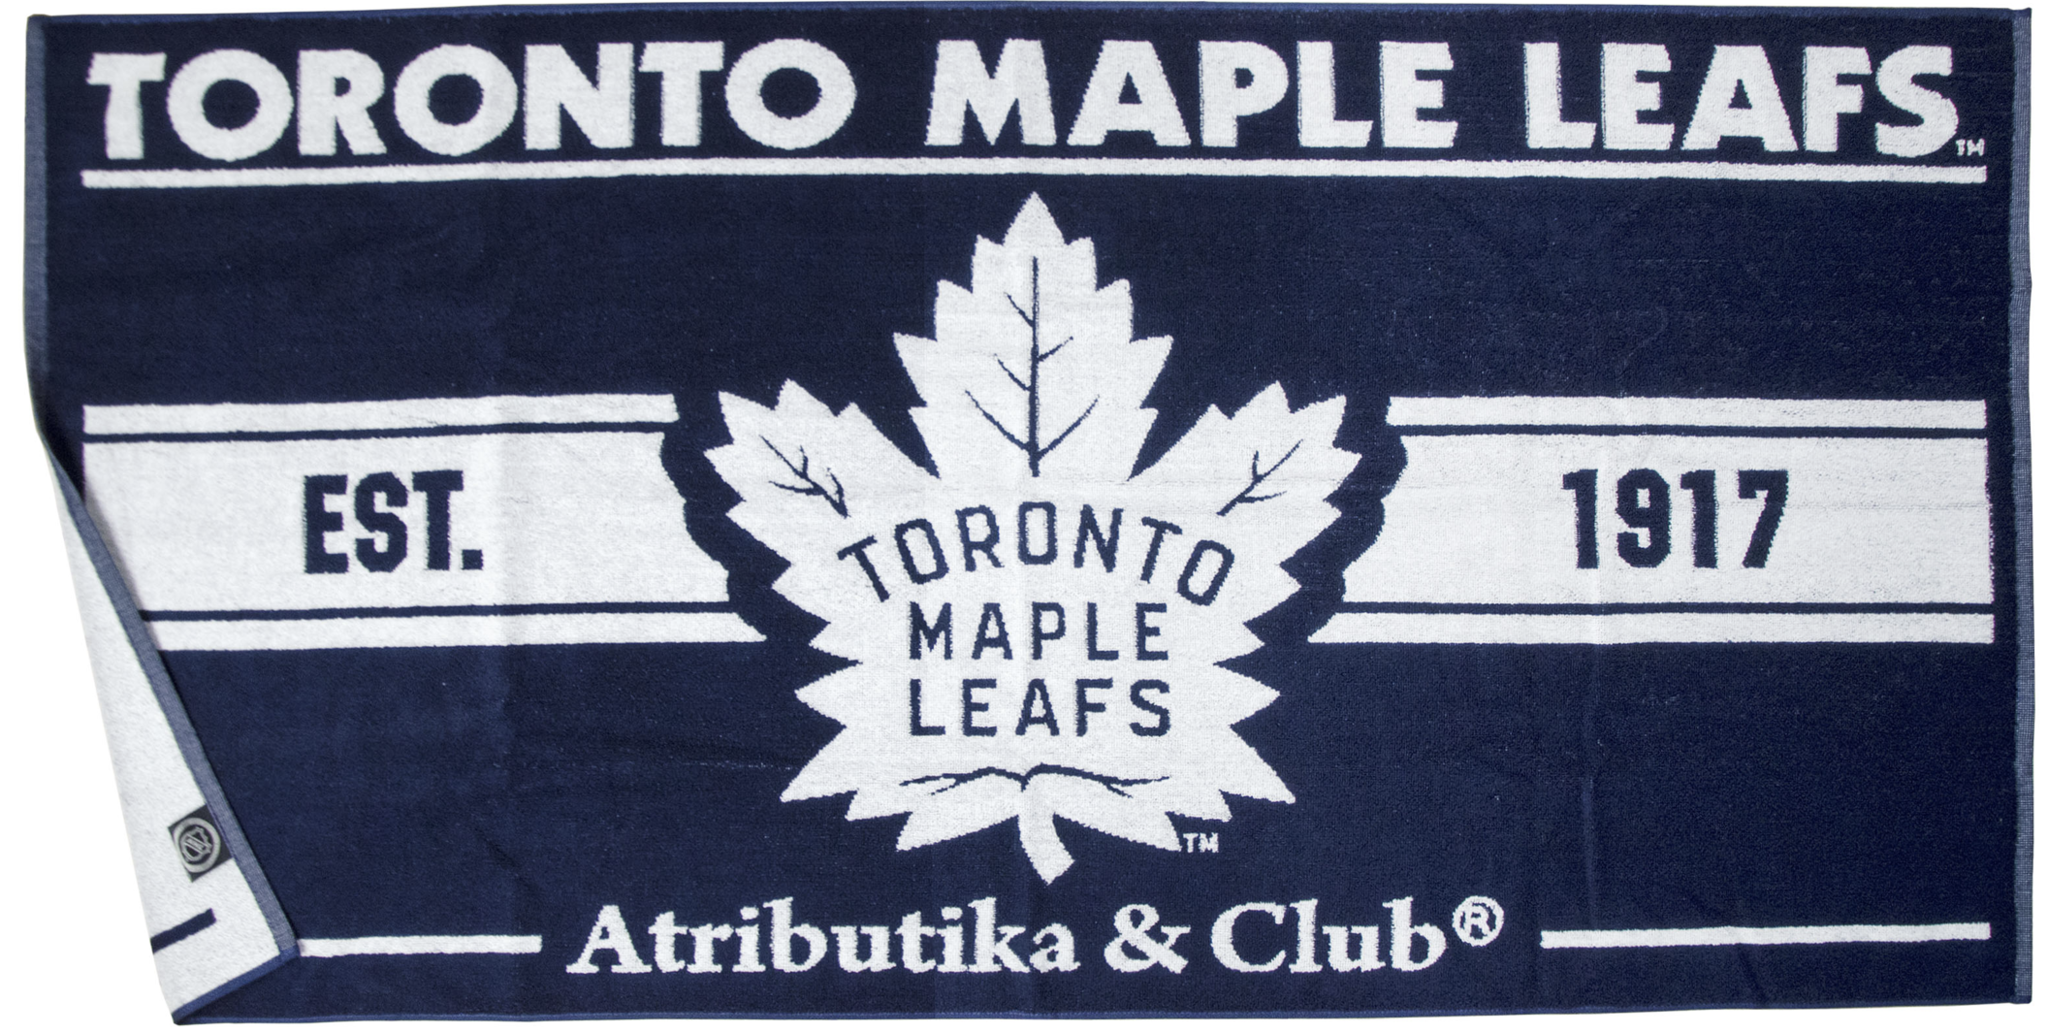 Полотенце NHL Toronto Maple Leafs est. 1917, Торонто Мейпл Лифс